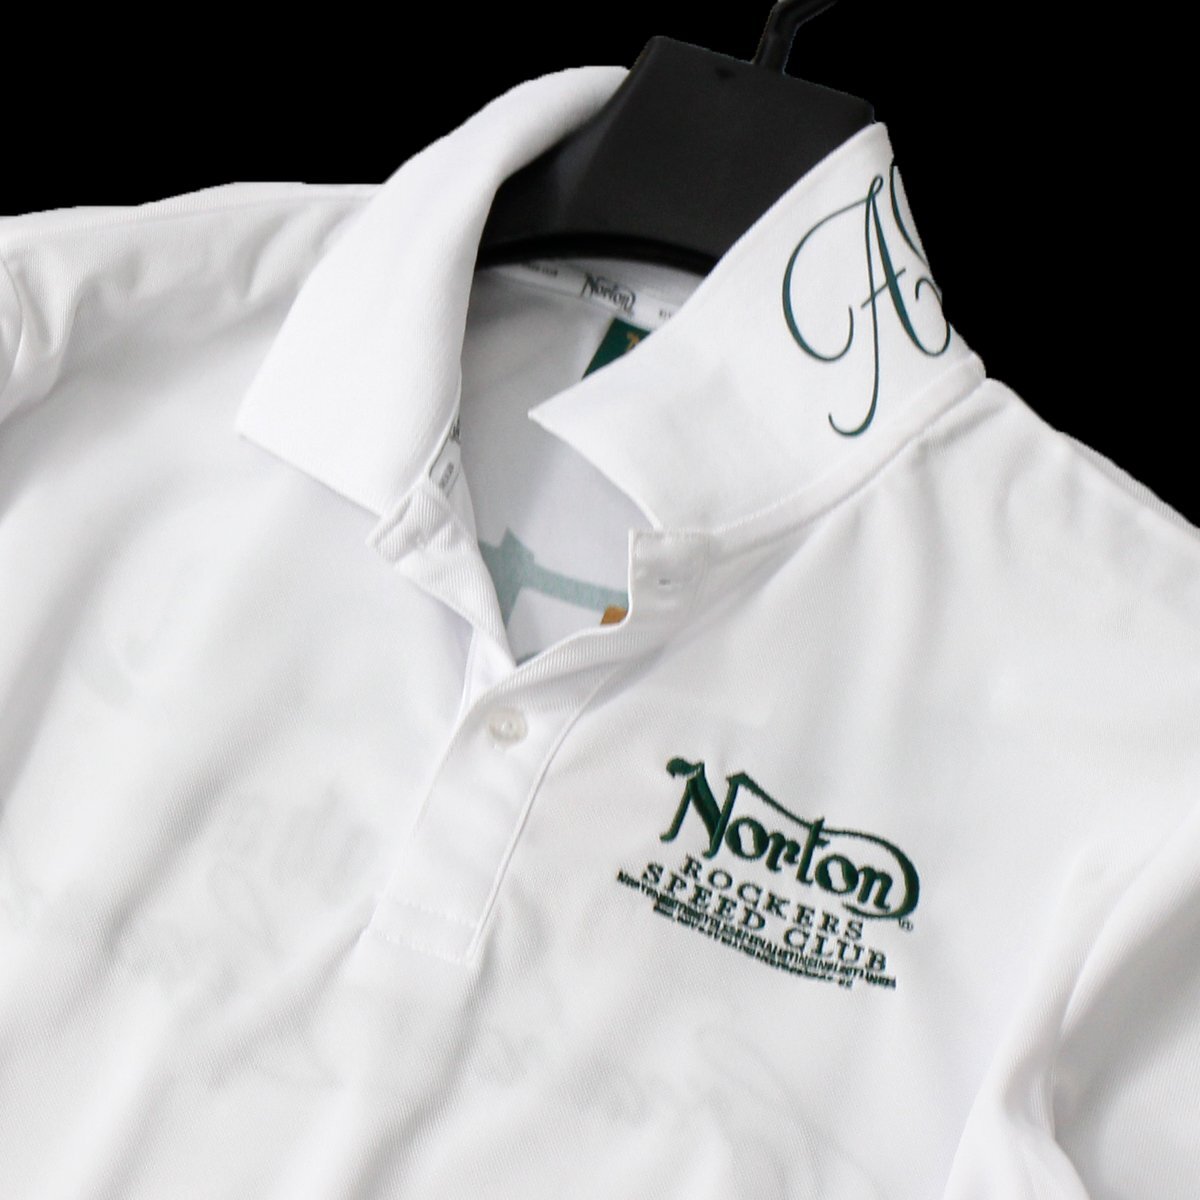  новый товар Norton Norton Golf олень. . рубашка-поло с коротким рукавом XL весна лето GOLF рубашка . вода скорость .UV cut Logo вышивка мужской одежда есть перевод *CG2302B